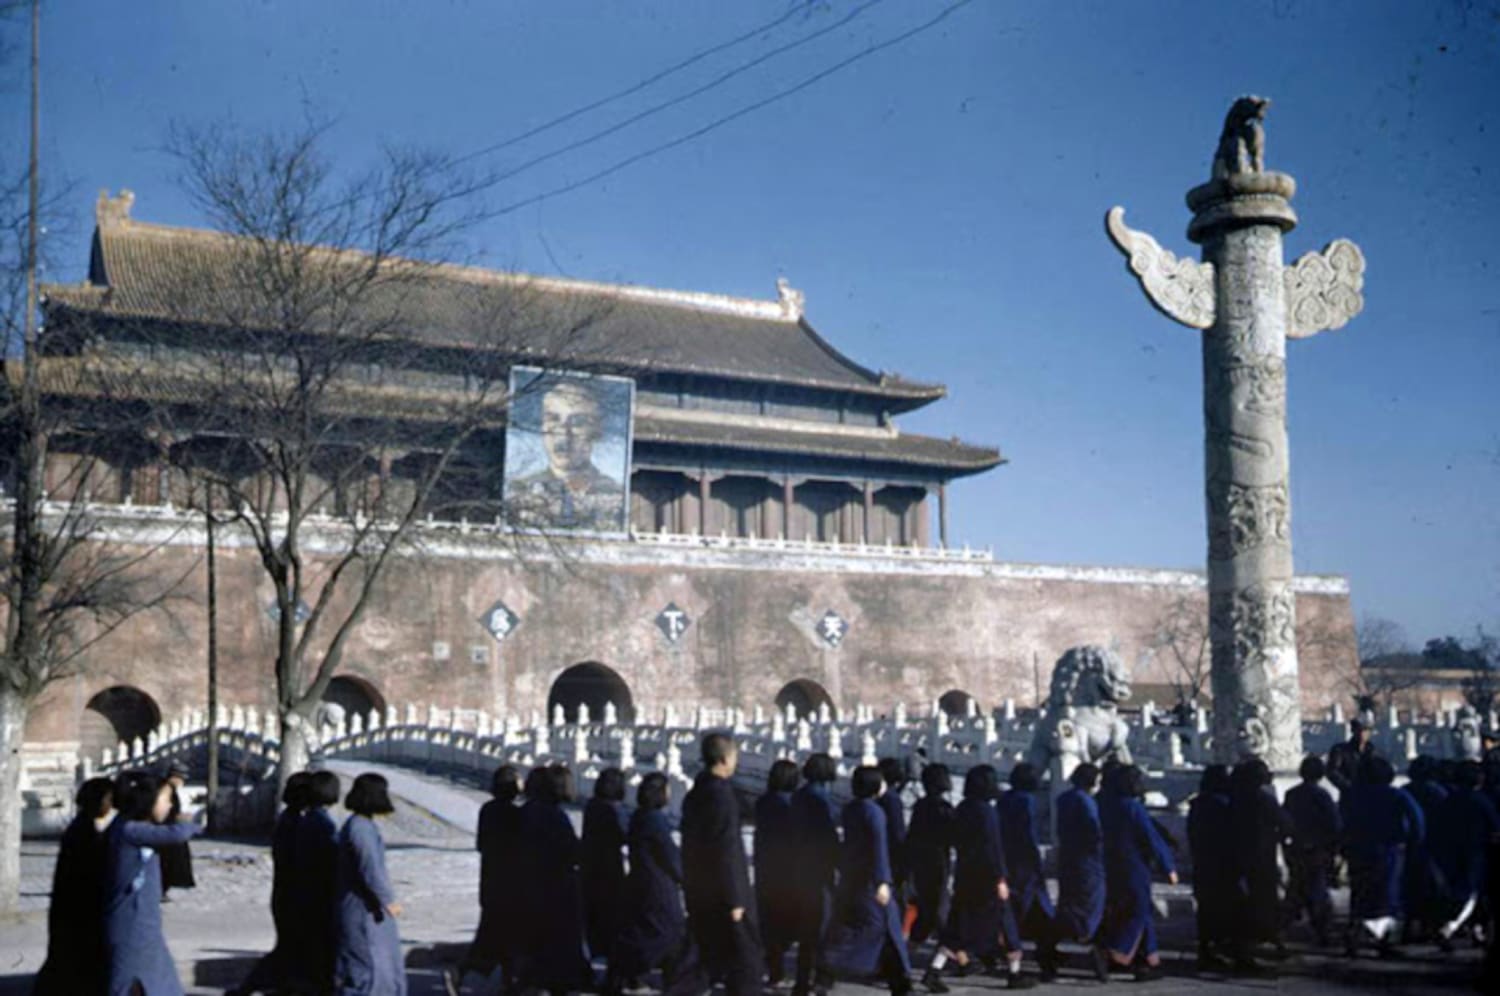 Tiananmen Gate in Republican China with Chiang Kai-shek's portrait, 1947